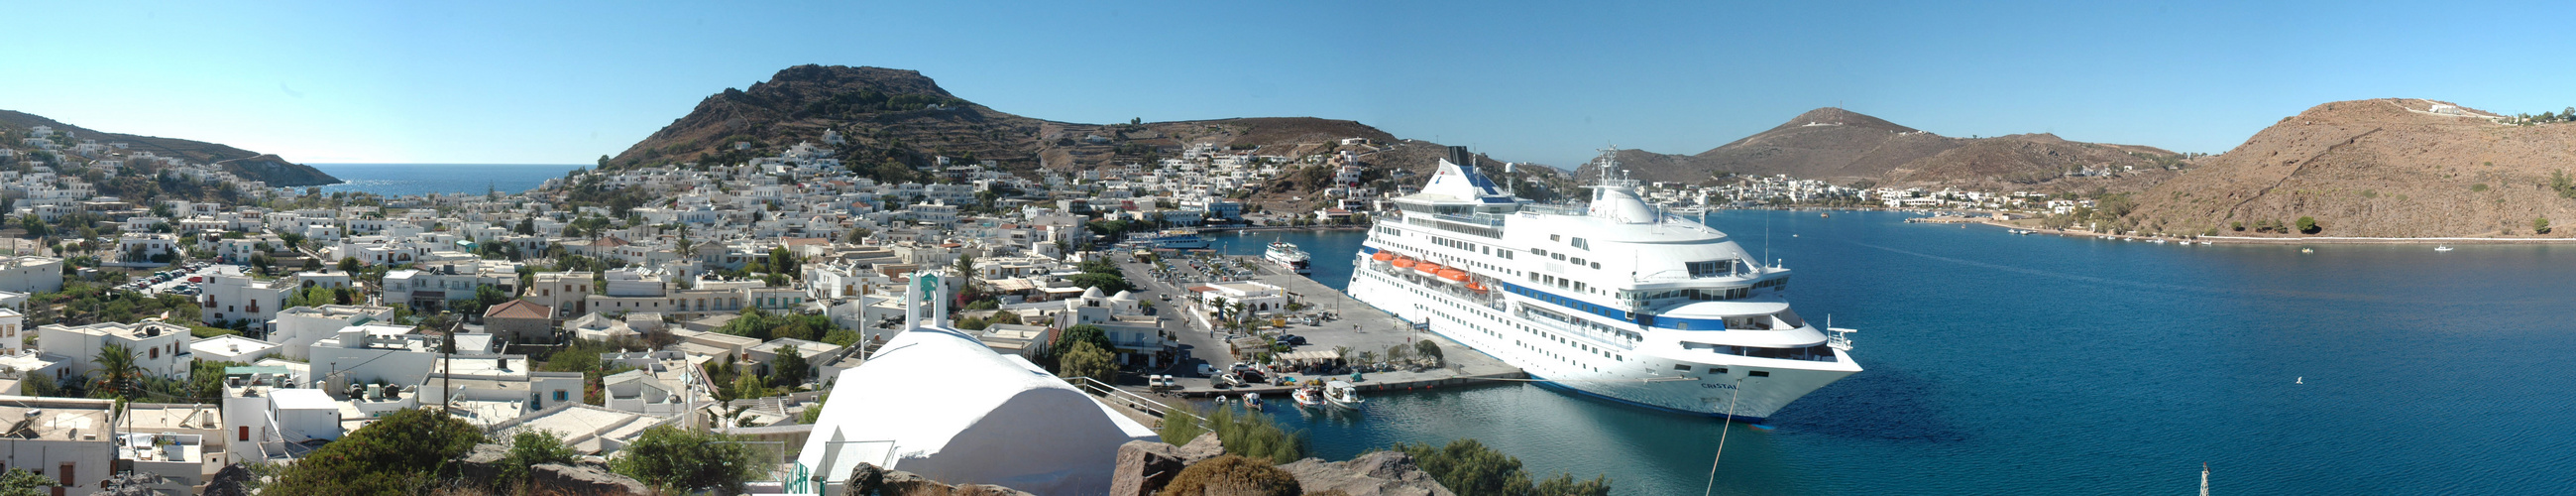 Das "Traumschiff" im Hafen von Patmos